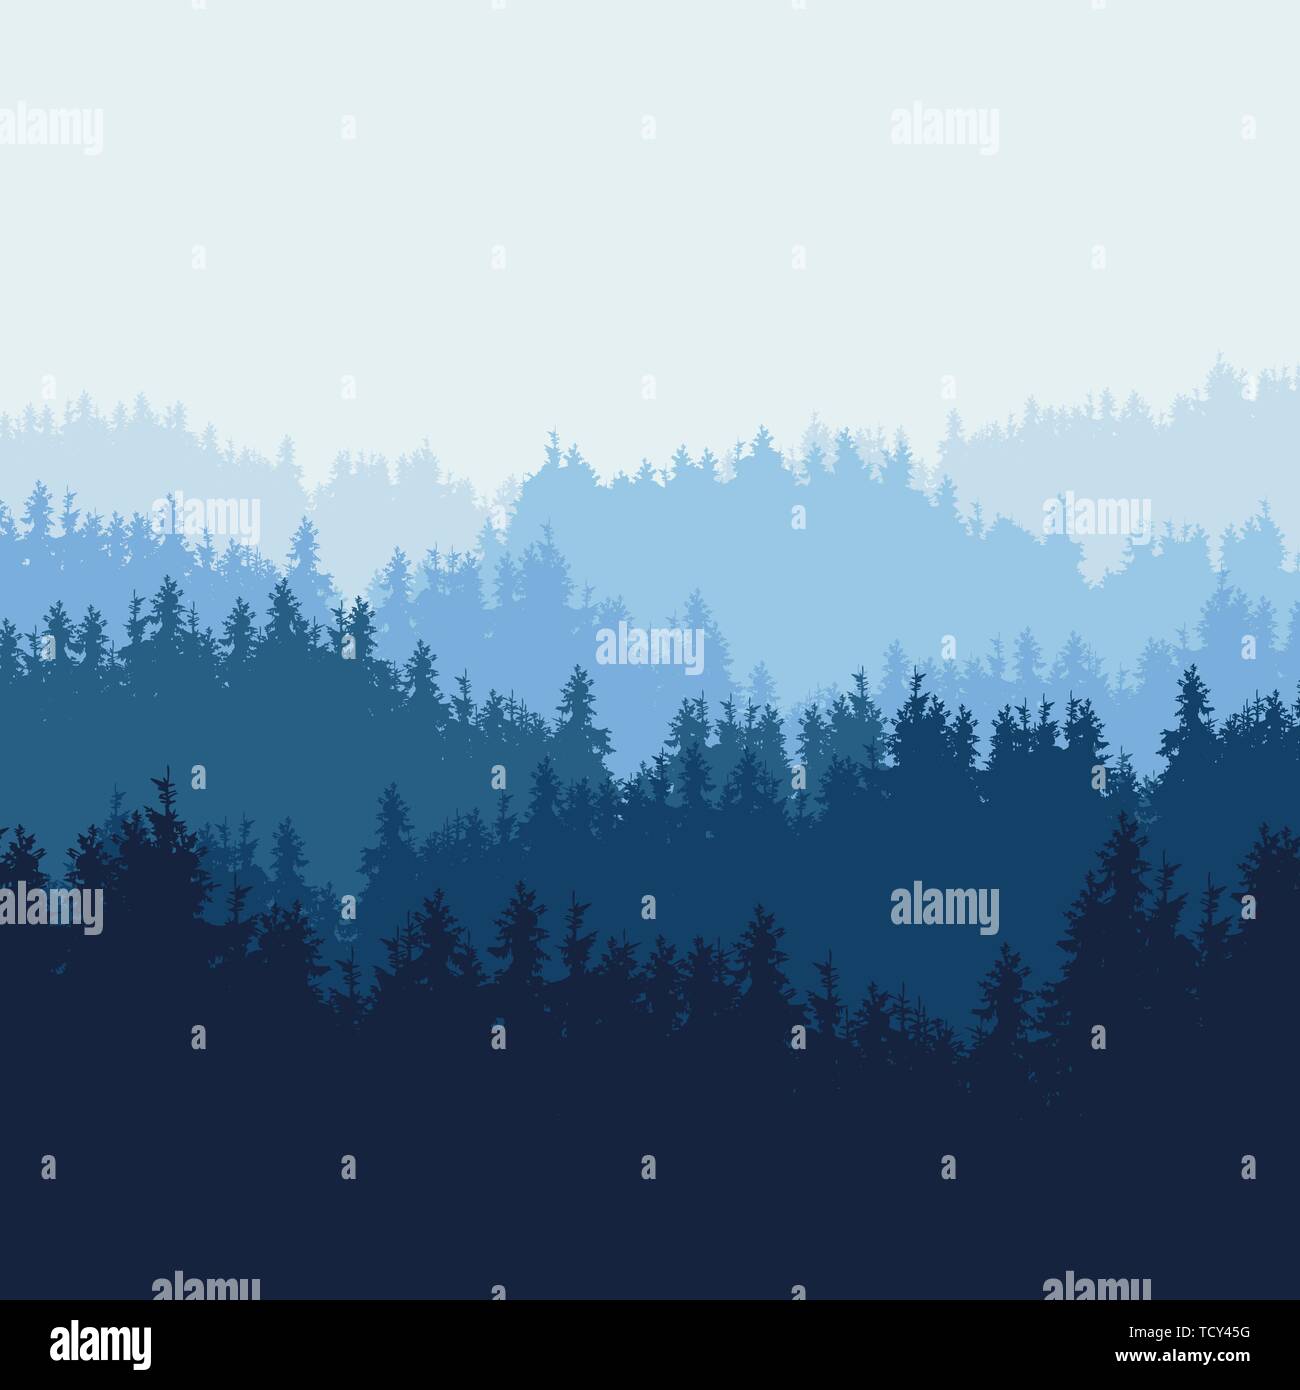 Realistische Darstellung der Berglandschaft mit nadelwald von Pinien und Hügel unter blauem Himmel. Geeignet als Werbung für die Natur Stock Vektor